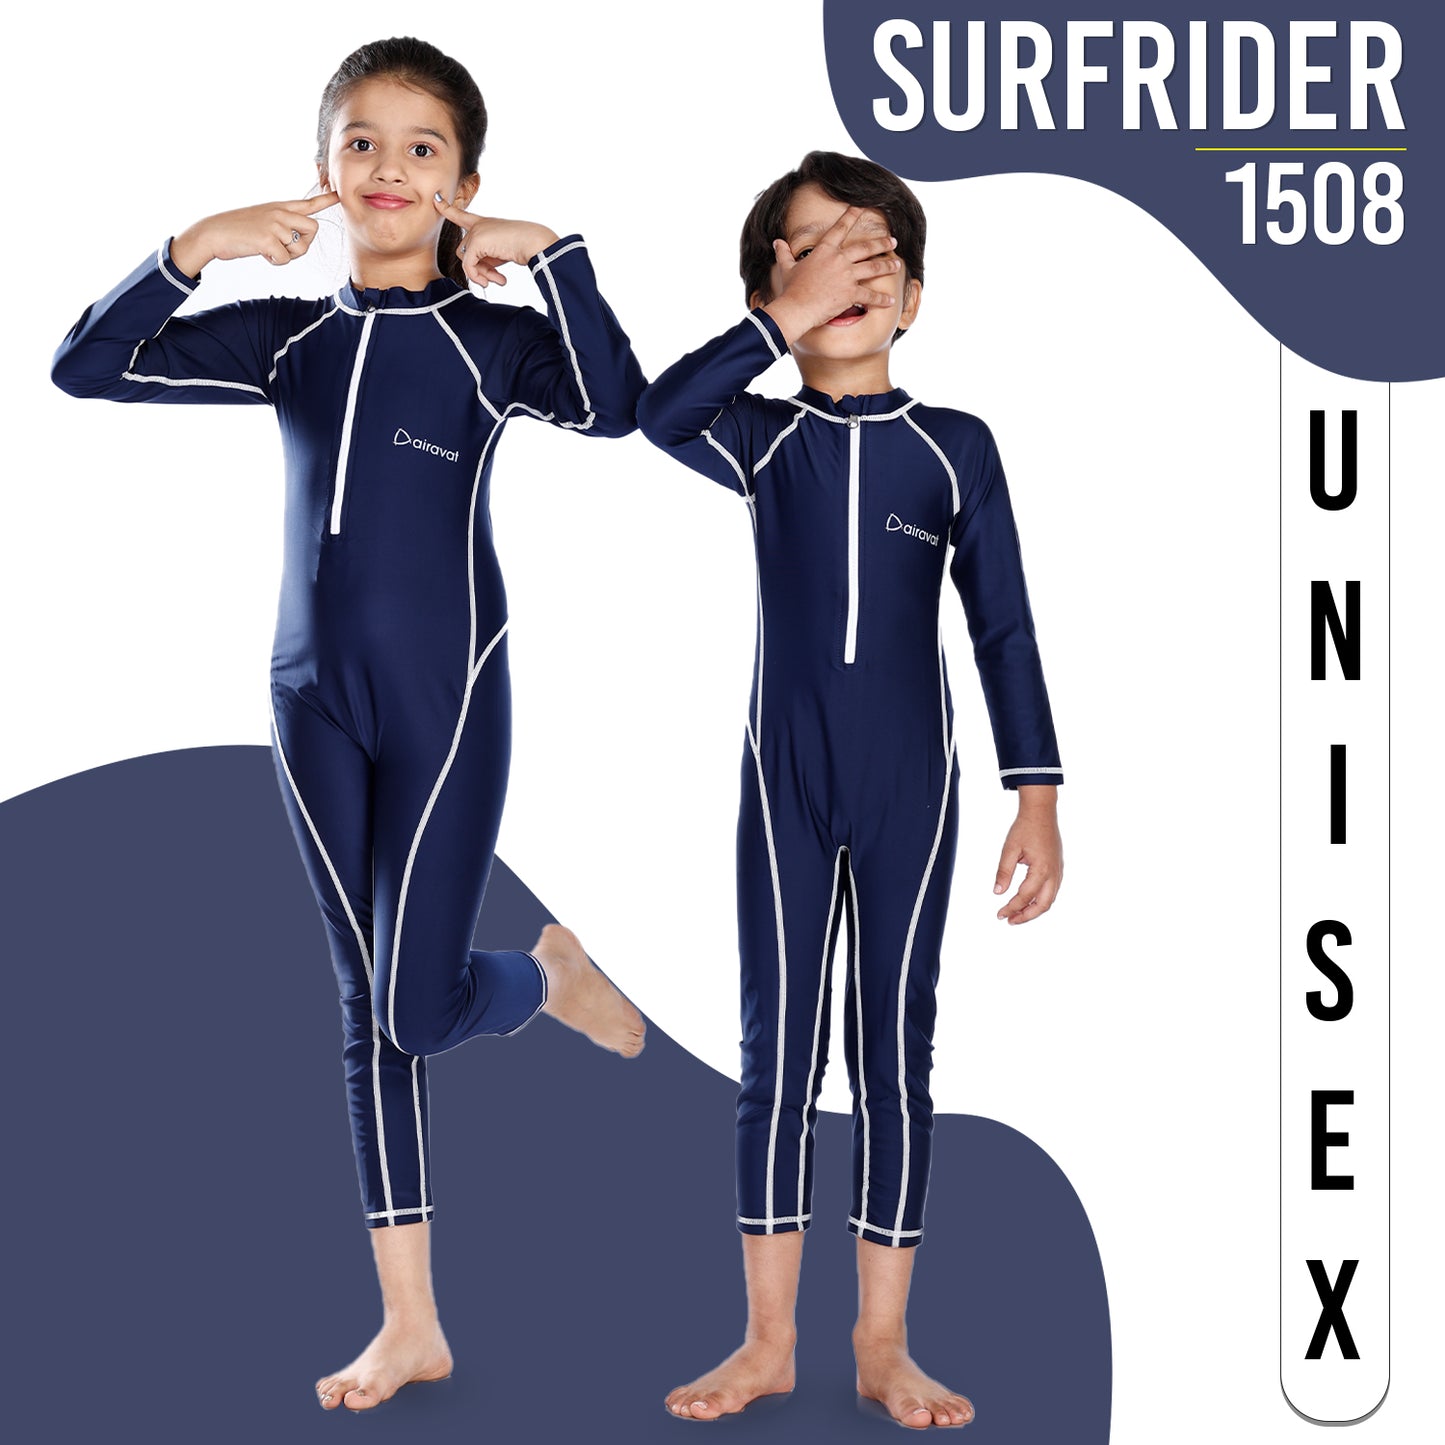 SURFRIDER 1508 (FULL BODY)